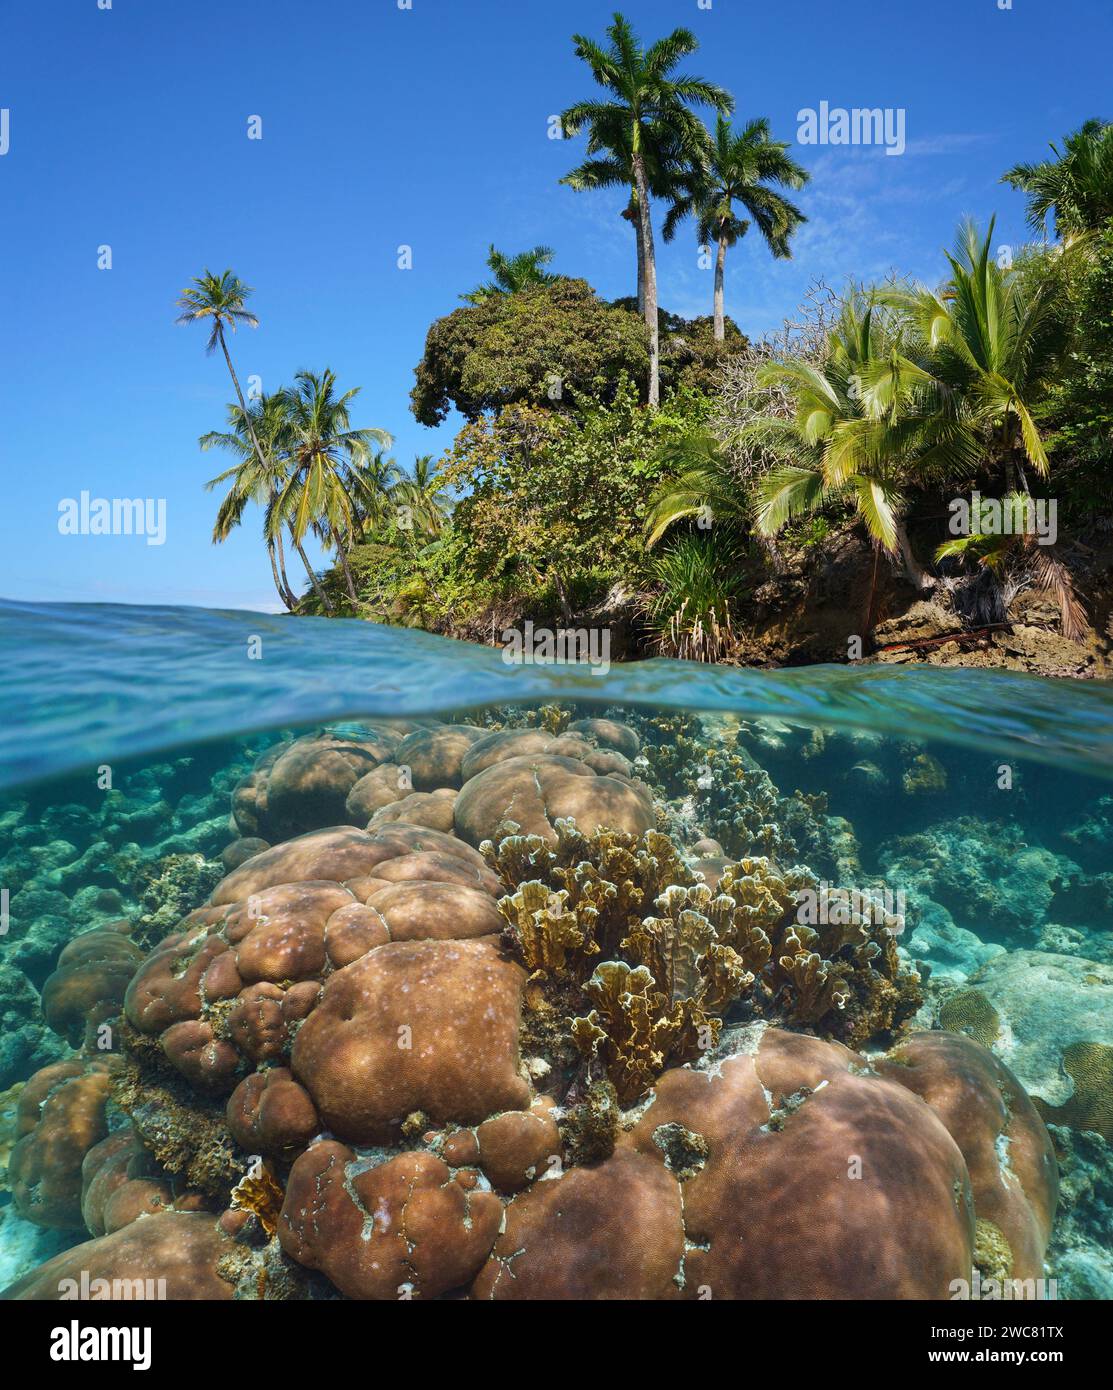 Rivage de mer tropicale avec un récif de corail sous-marin, mer des Caraïbes, vue divisée à moitié sur et sous la surface de l'eau, scène naturelle, Amérique centrale, Panama Banque D'Images